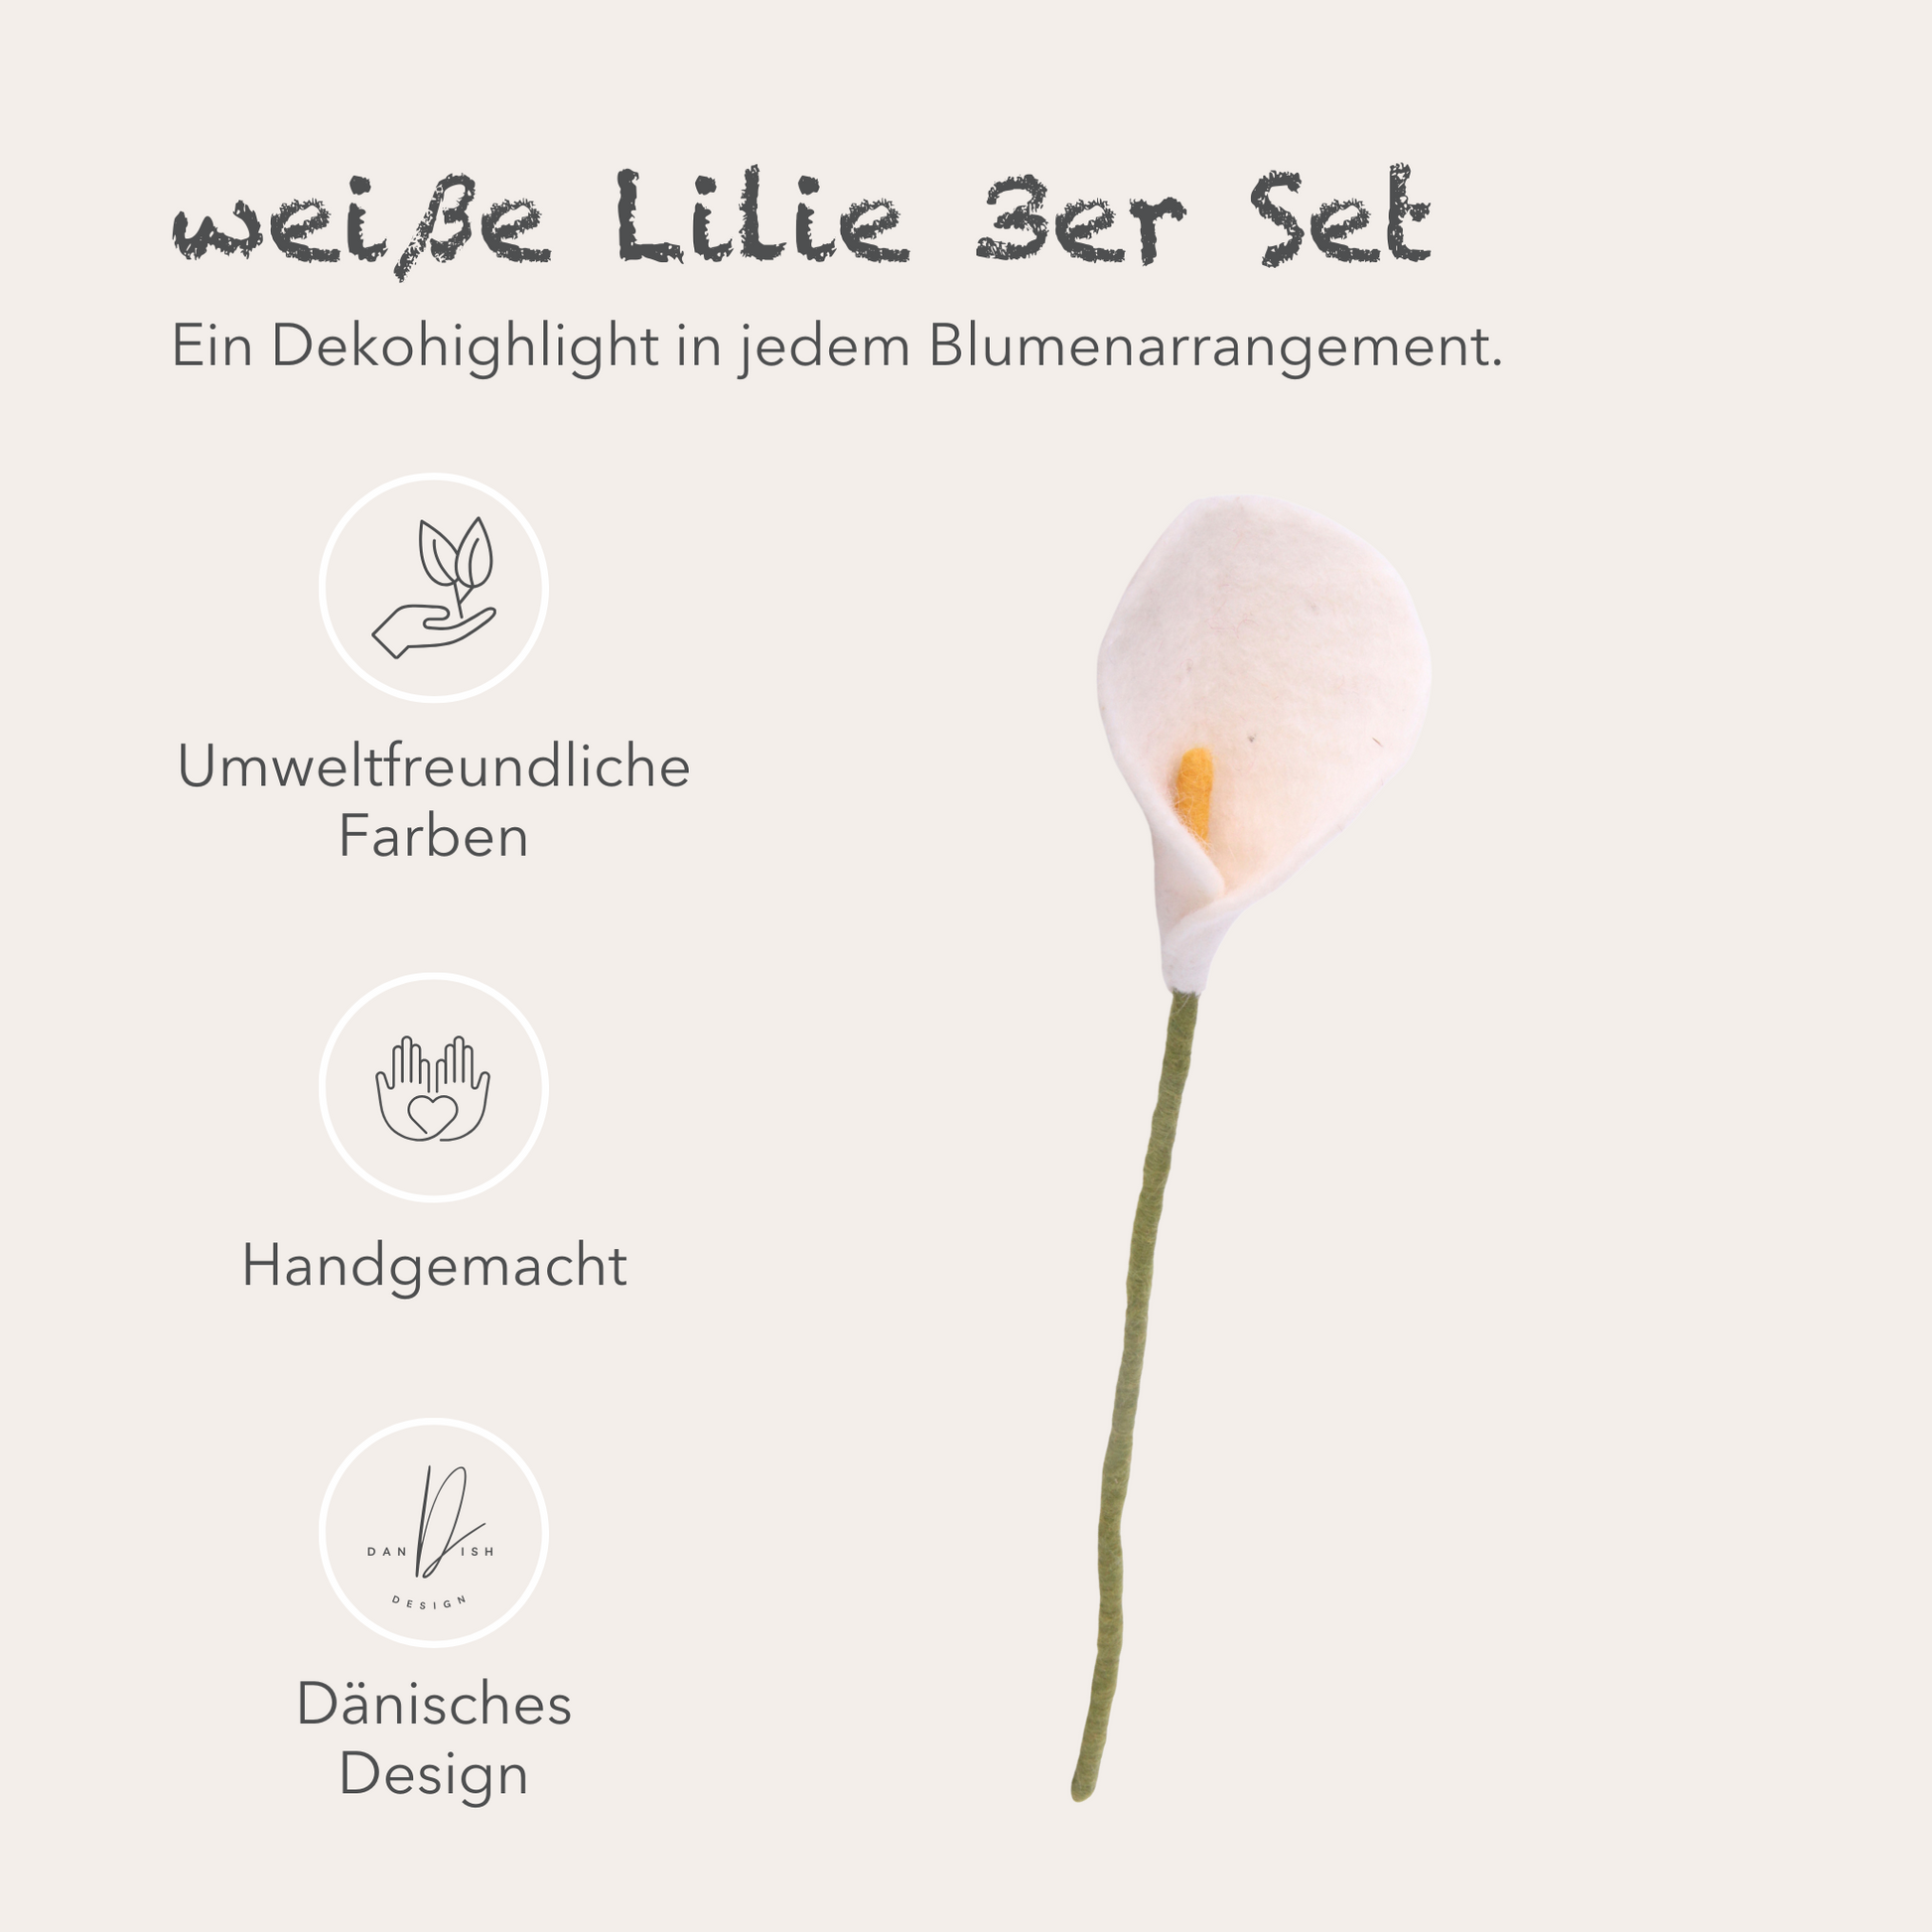 Filzlig Blume - Lilie weiß 3er Set  Gry & Sif USPs